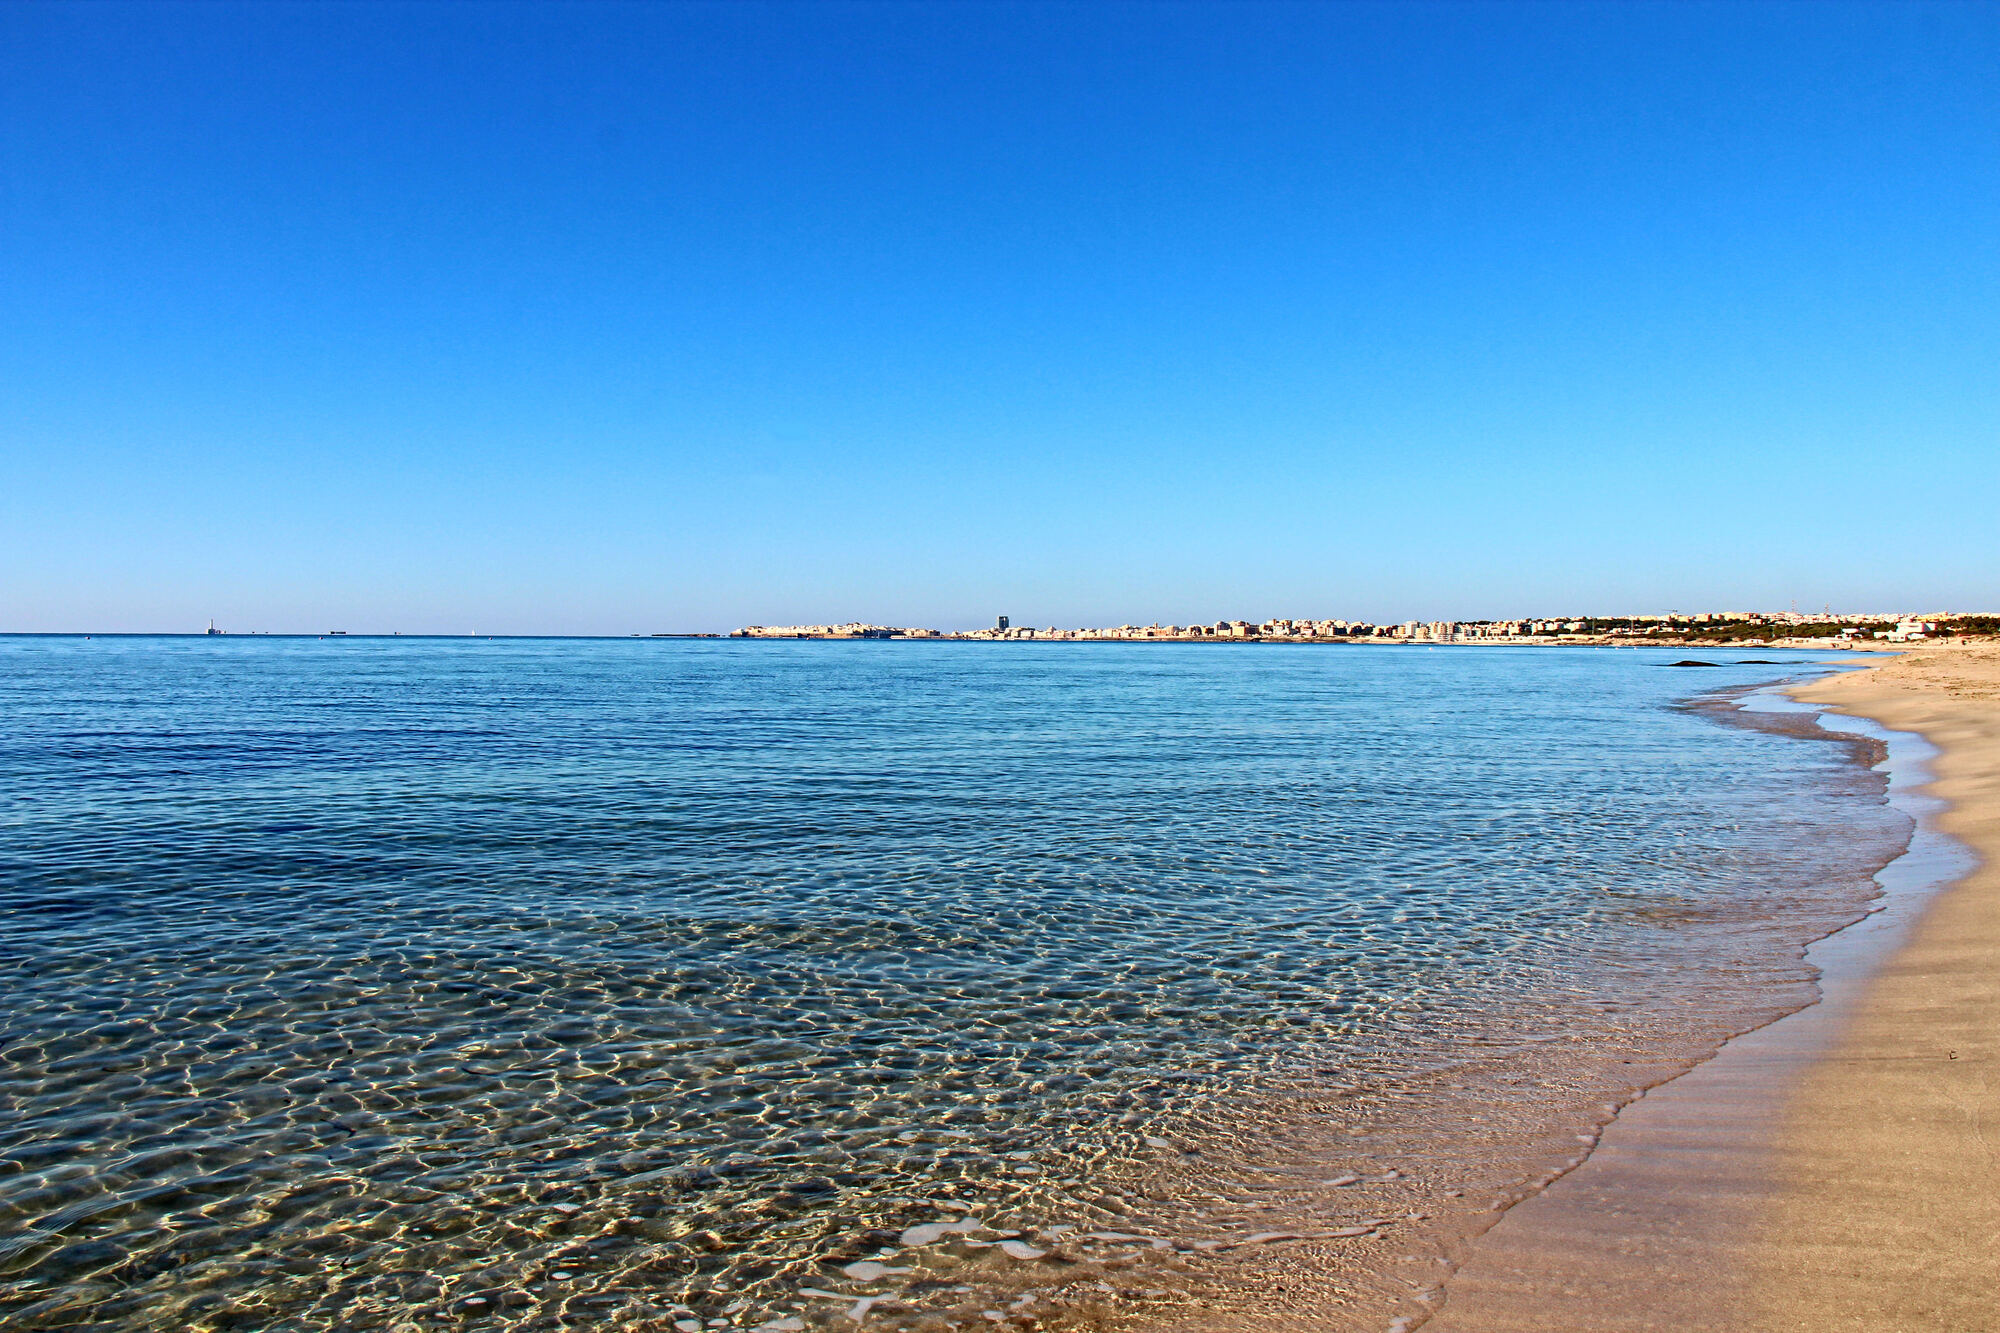 La spiaggia di Punta Pizzo a Gallipoli, nel Parco Naturale Regionale 'Isola di Sant'Andrea - Litorale di Punta Pizzo', offre un paesaggio incontaminato con spiagge sabbiose e una folta pineta.